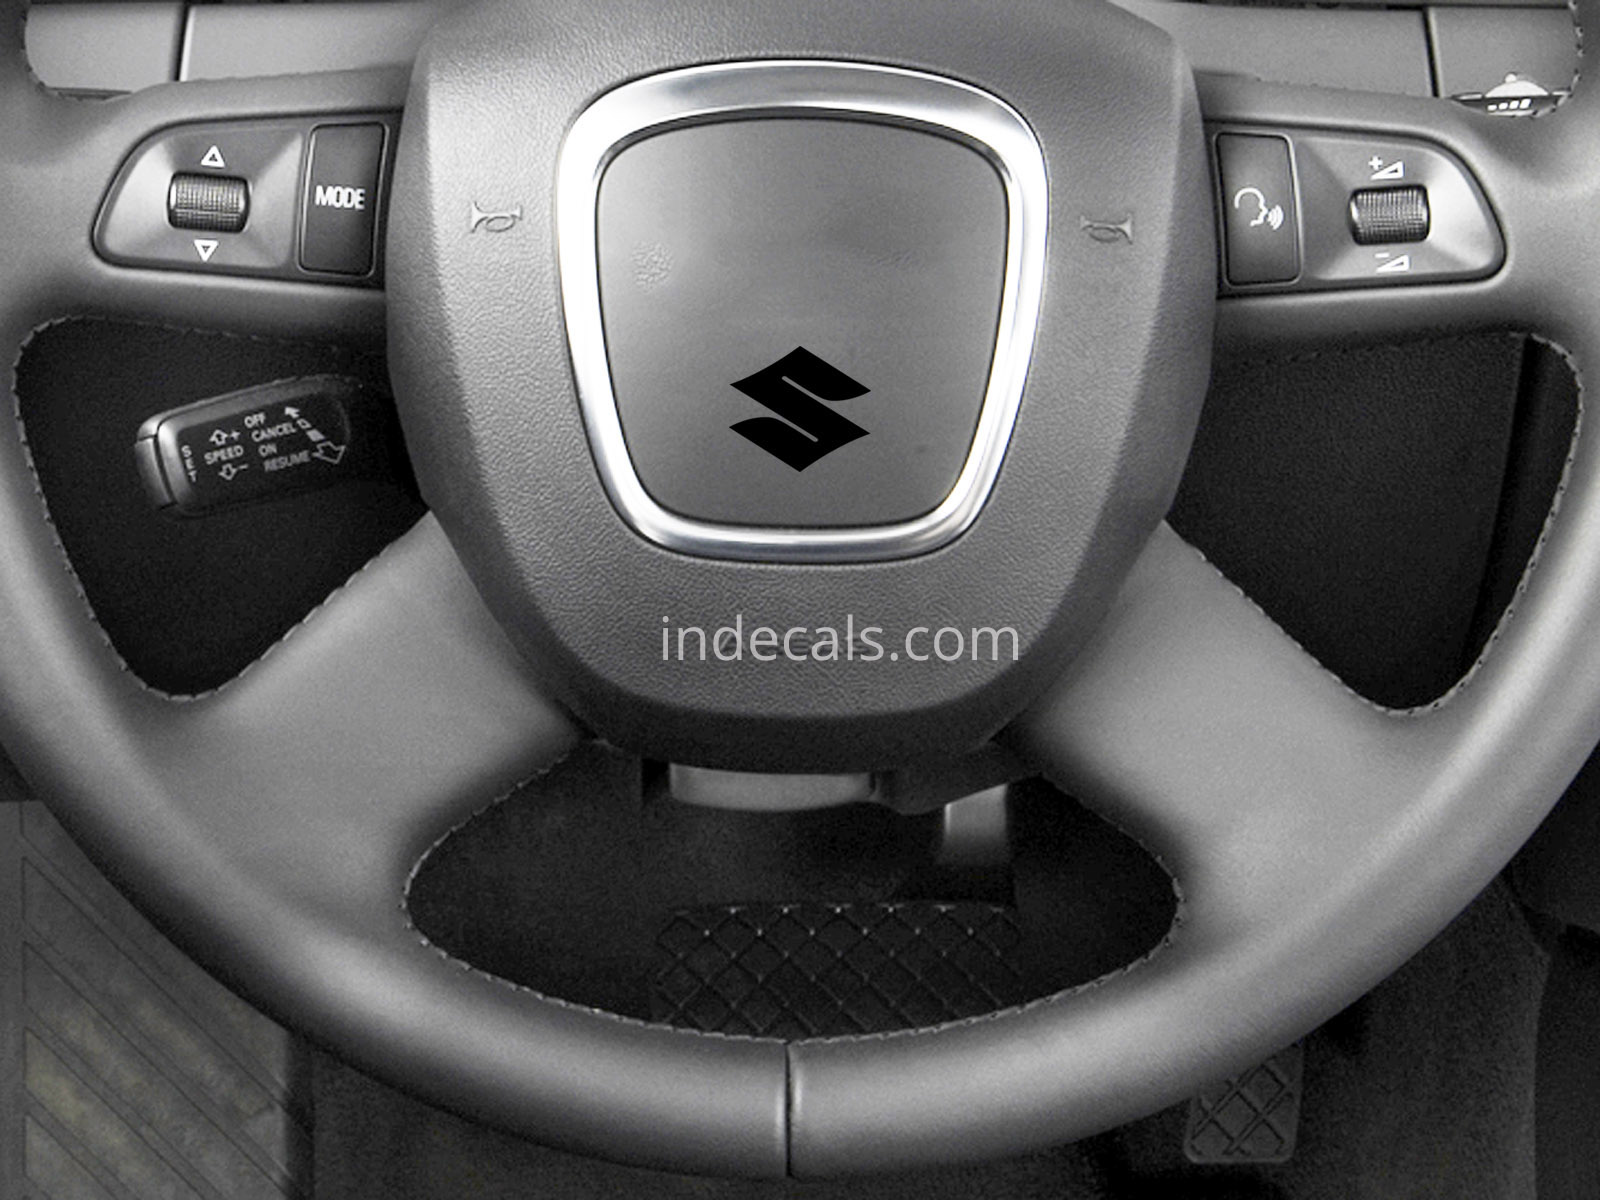 3 x Suzuki Stickers for Steering Wheel - Black